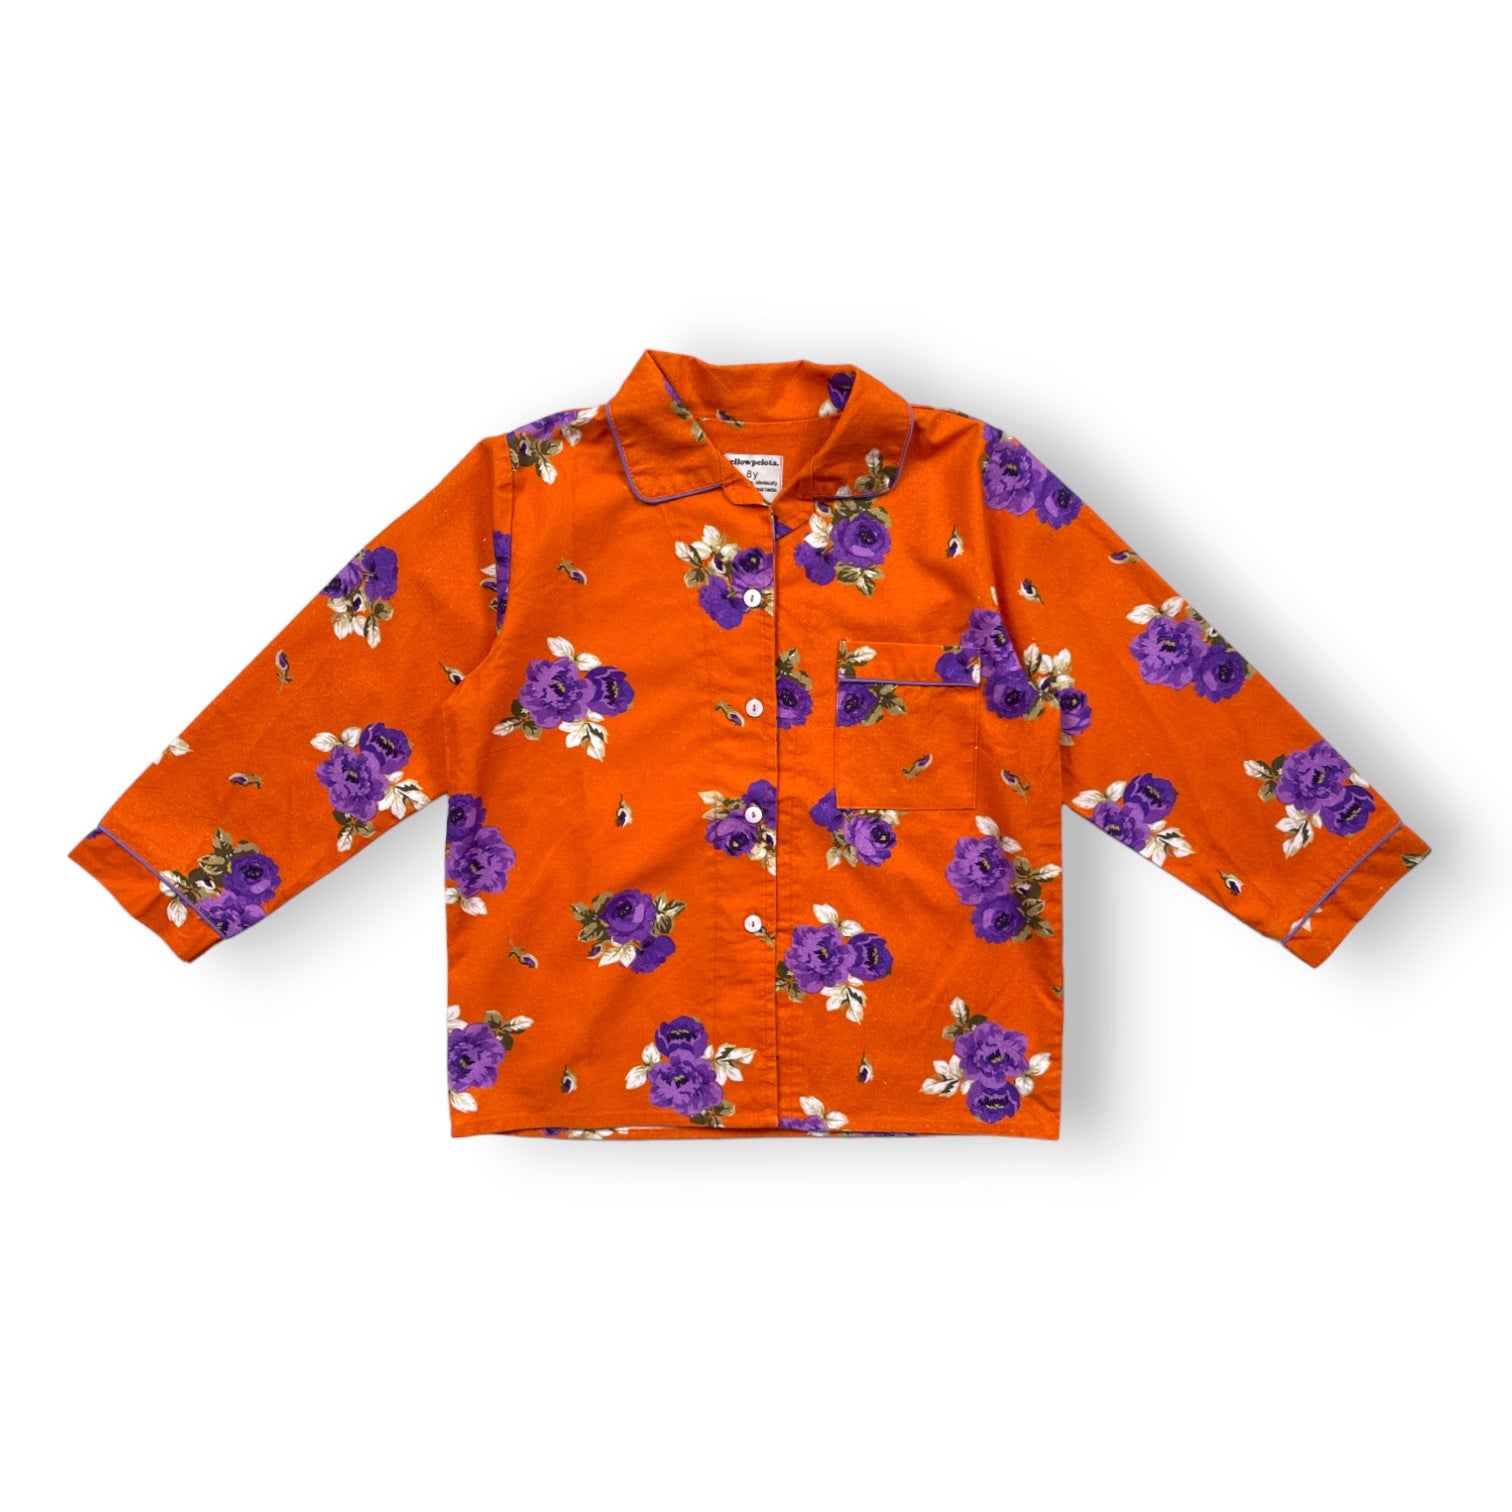 YELLOW PELOTA - Chemise orange à fleurs violettes - 8 ans